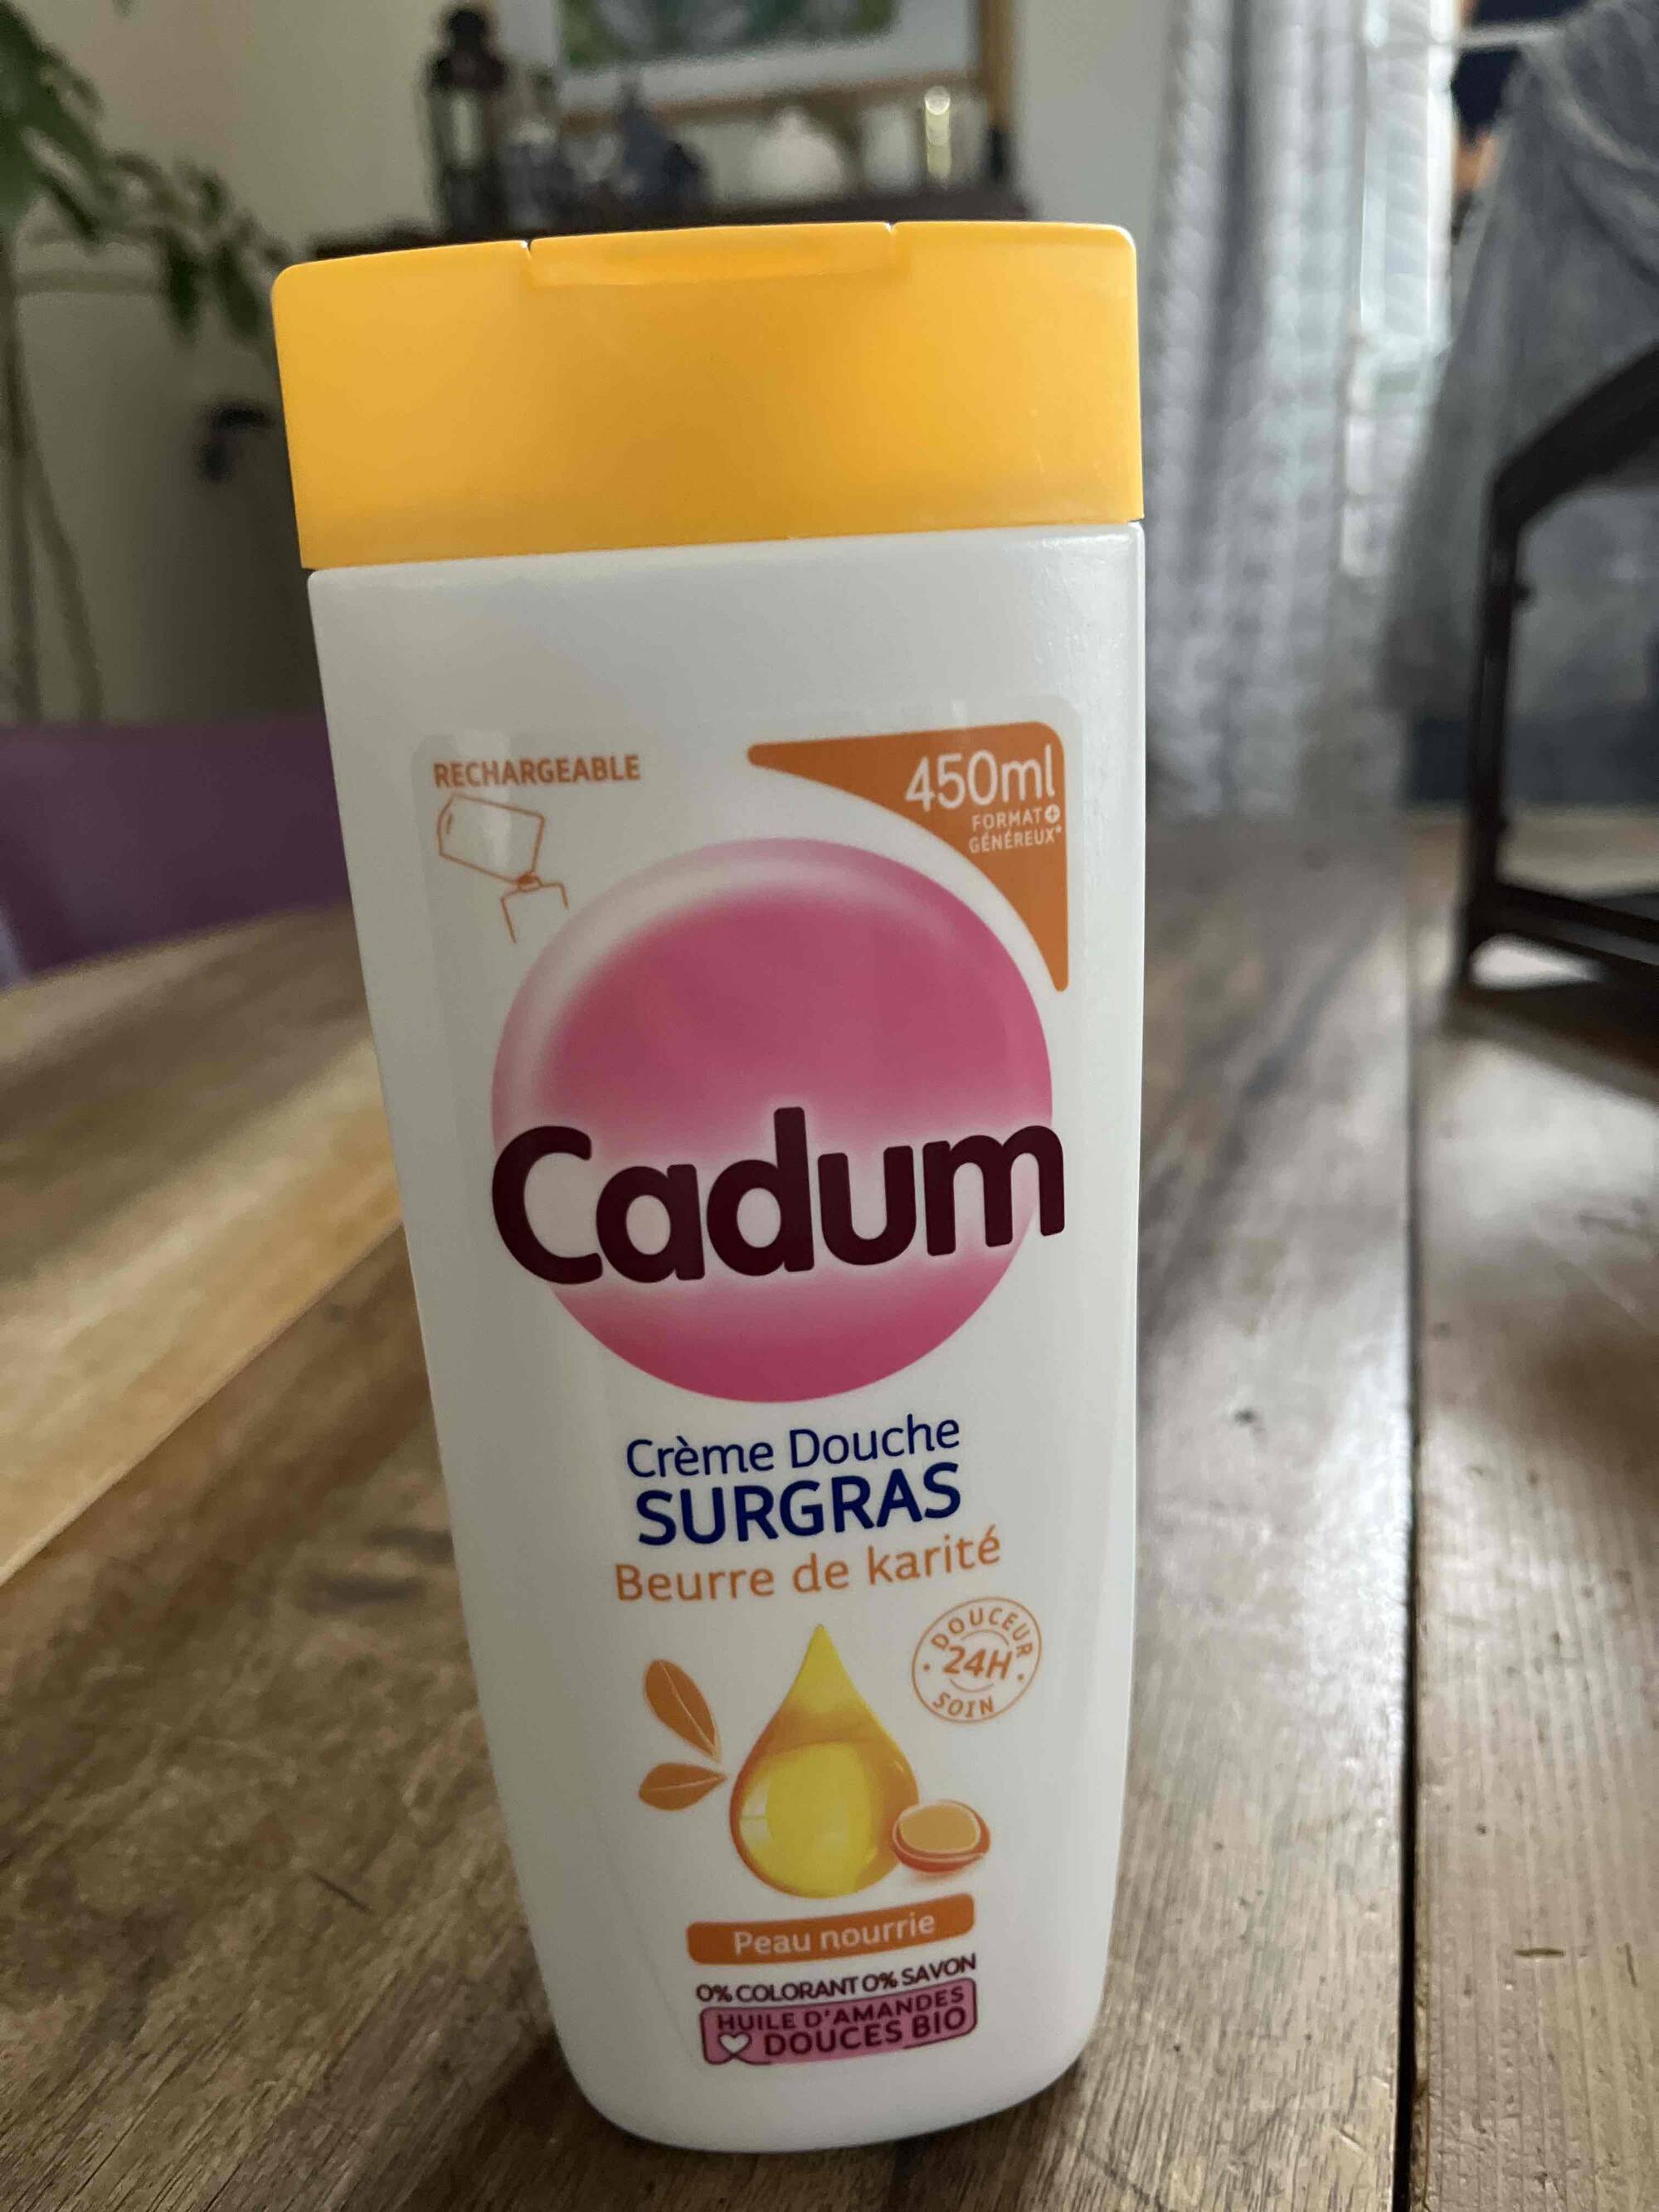 CADUM - Peau nourrie - Crème douche surgras beurre de karité